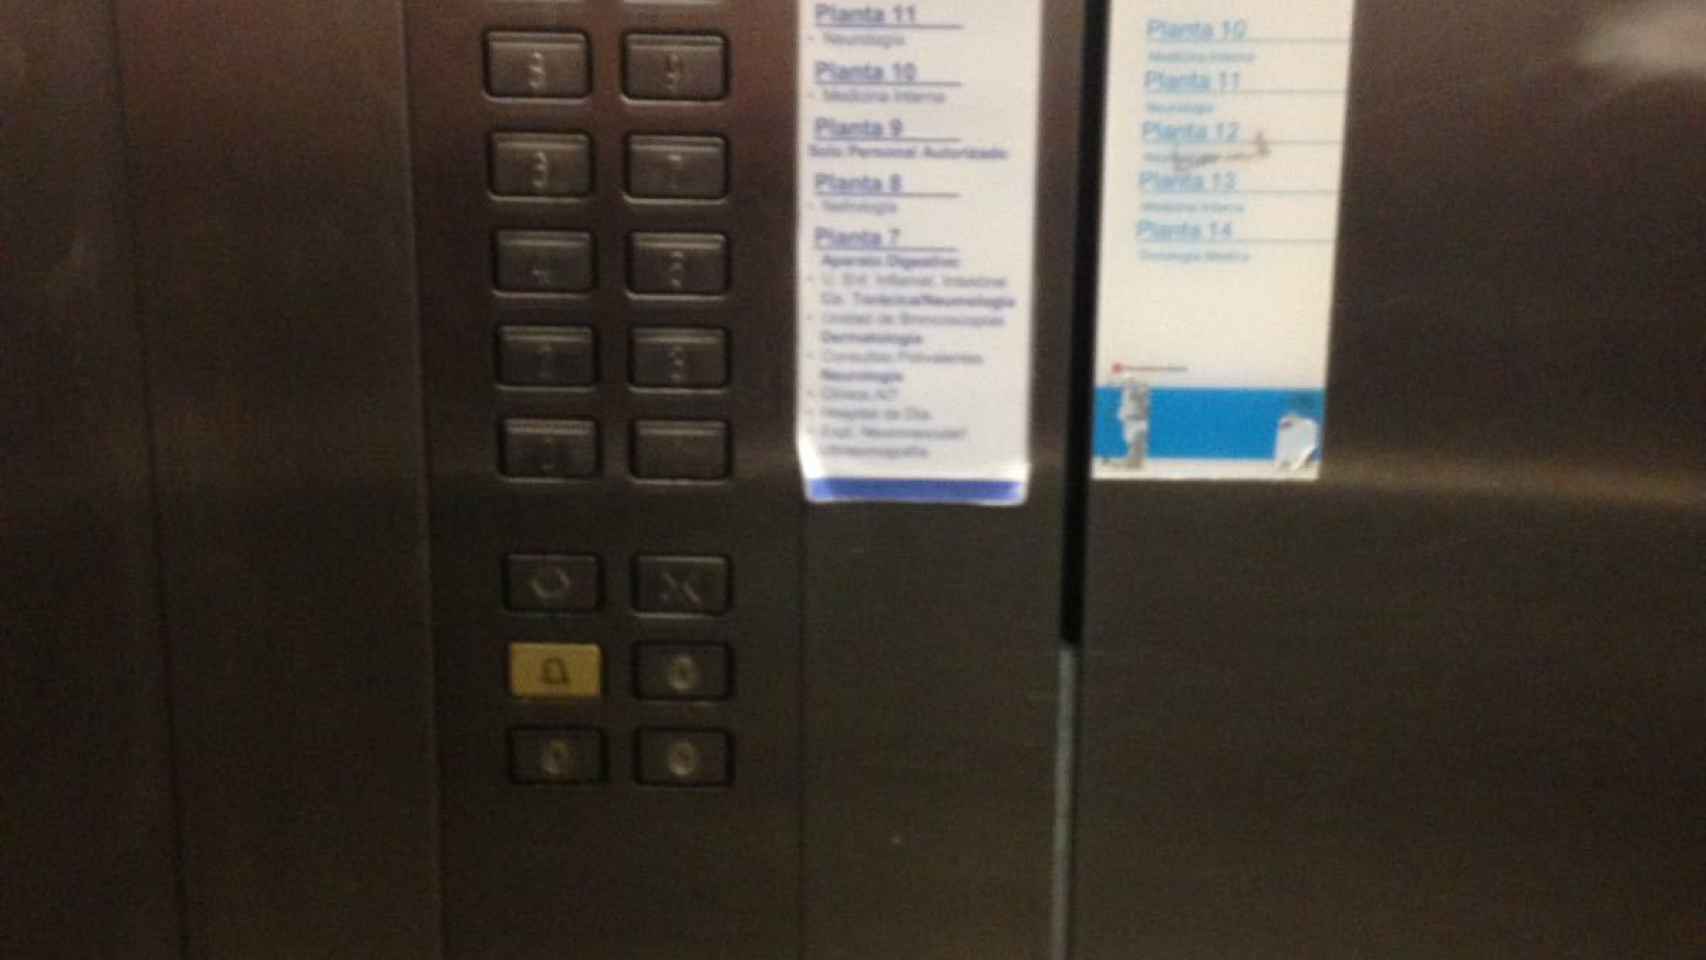 Interior del ascensor 53, el contiguo a aquel en el que tuvieron lugar los hechos.